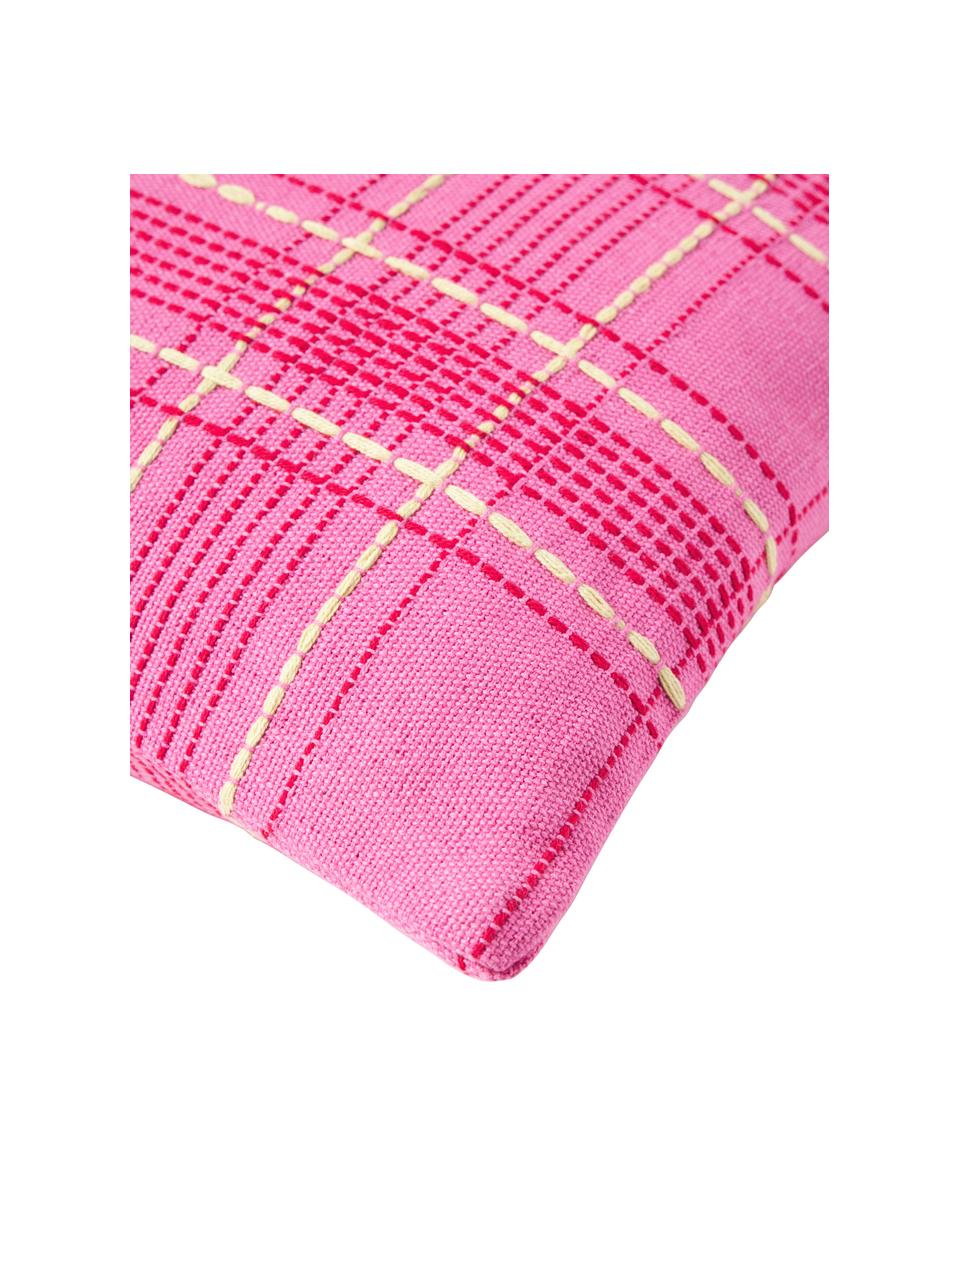 Poszewka na poduszkę z bawełny Orla, 100% bawełna, Blady różowy, S 45 x D 45 cm